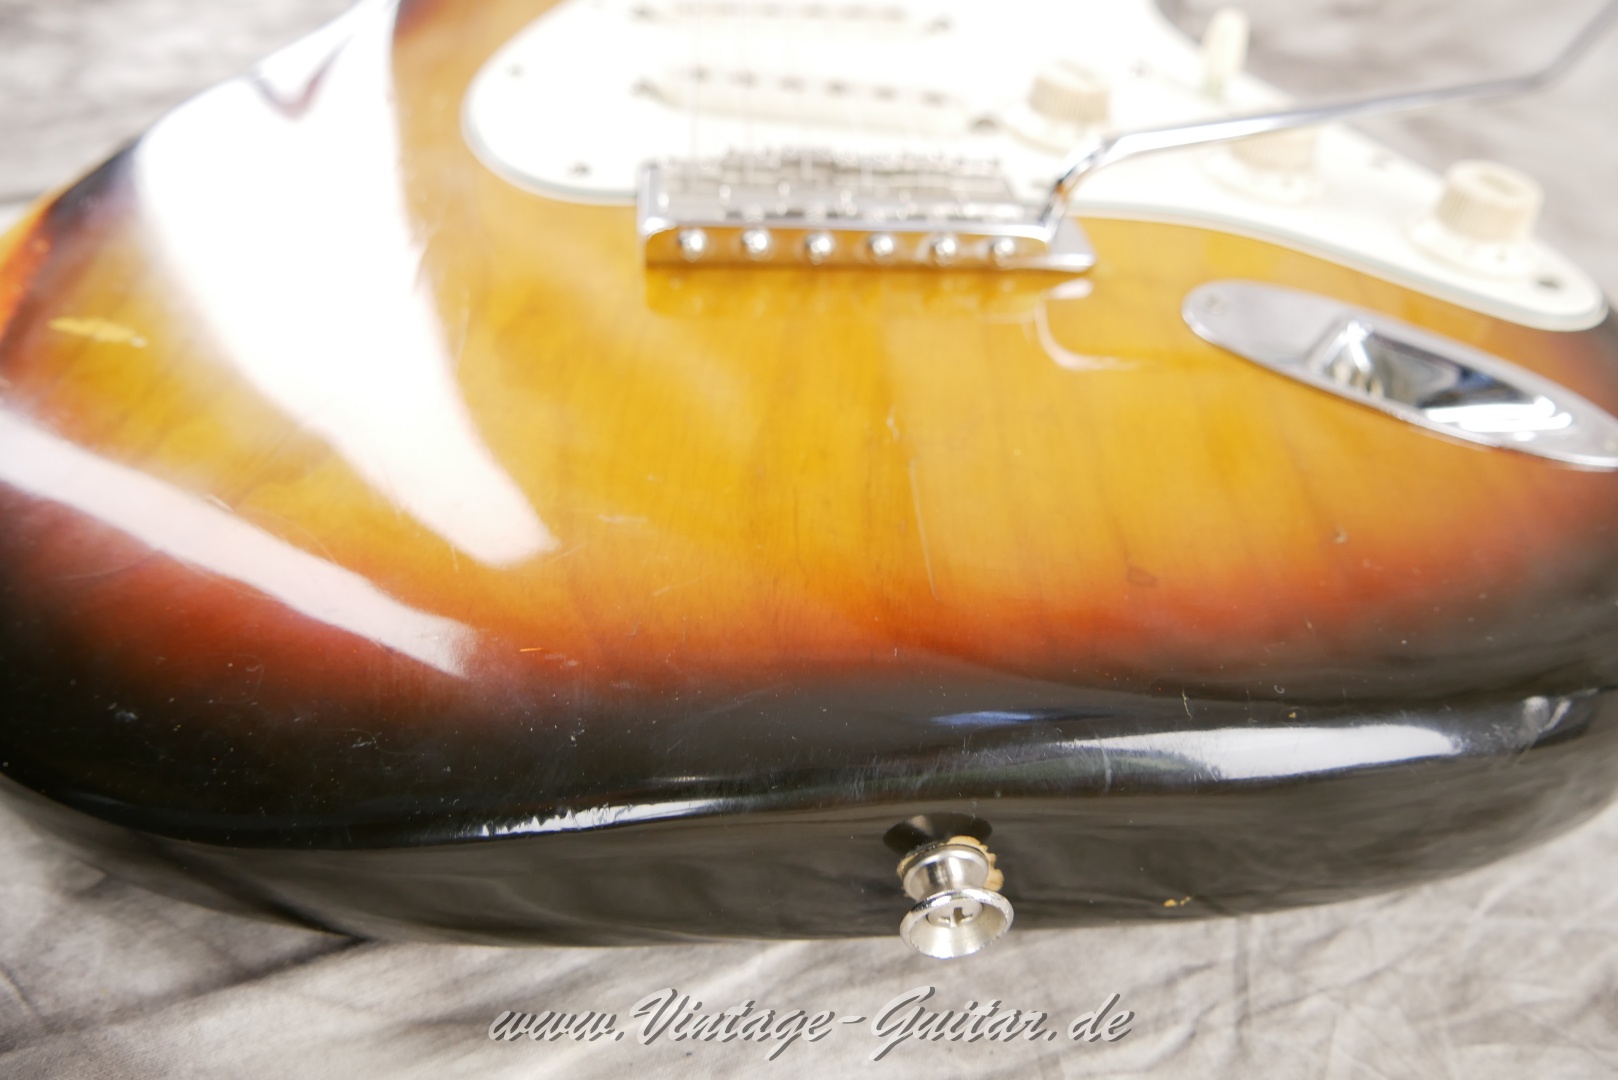 Fender-Stratocaster-1974-sunburst-016.JPG